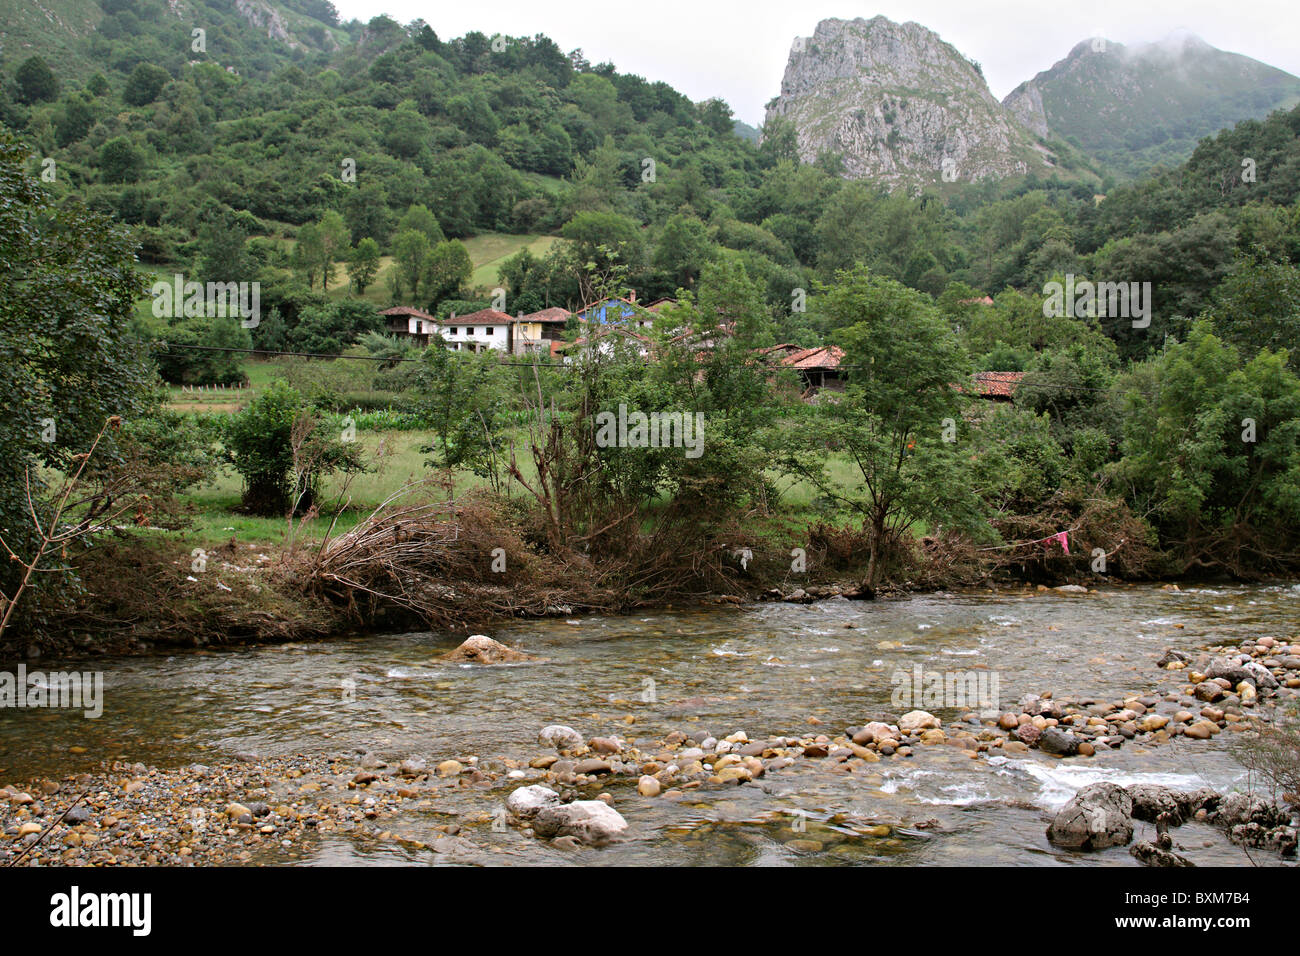 Las inundaciones en Asturias en el río Sella - nivel de inundaciones cleary visible desde los escombros de inundación a lo largo del río Foto de stock